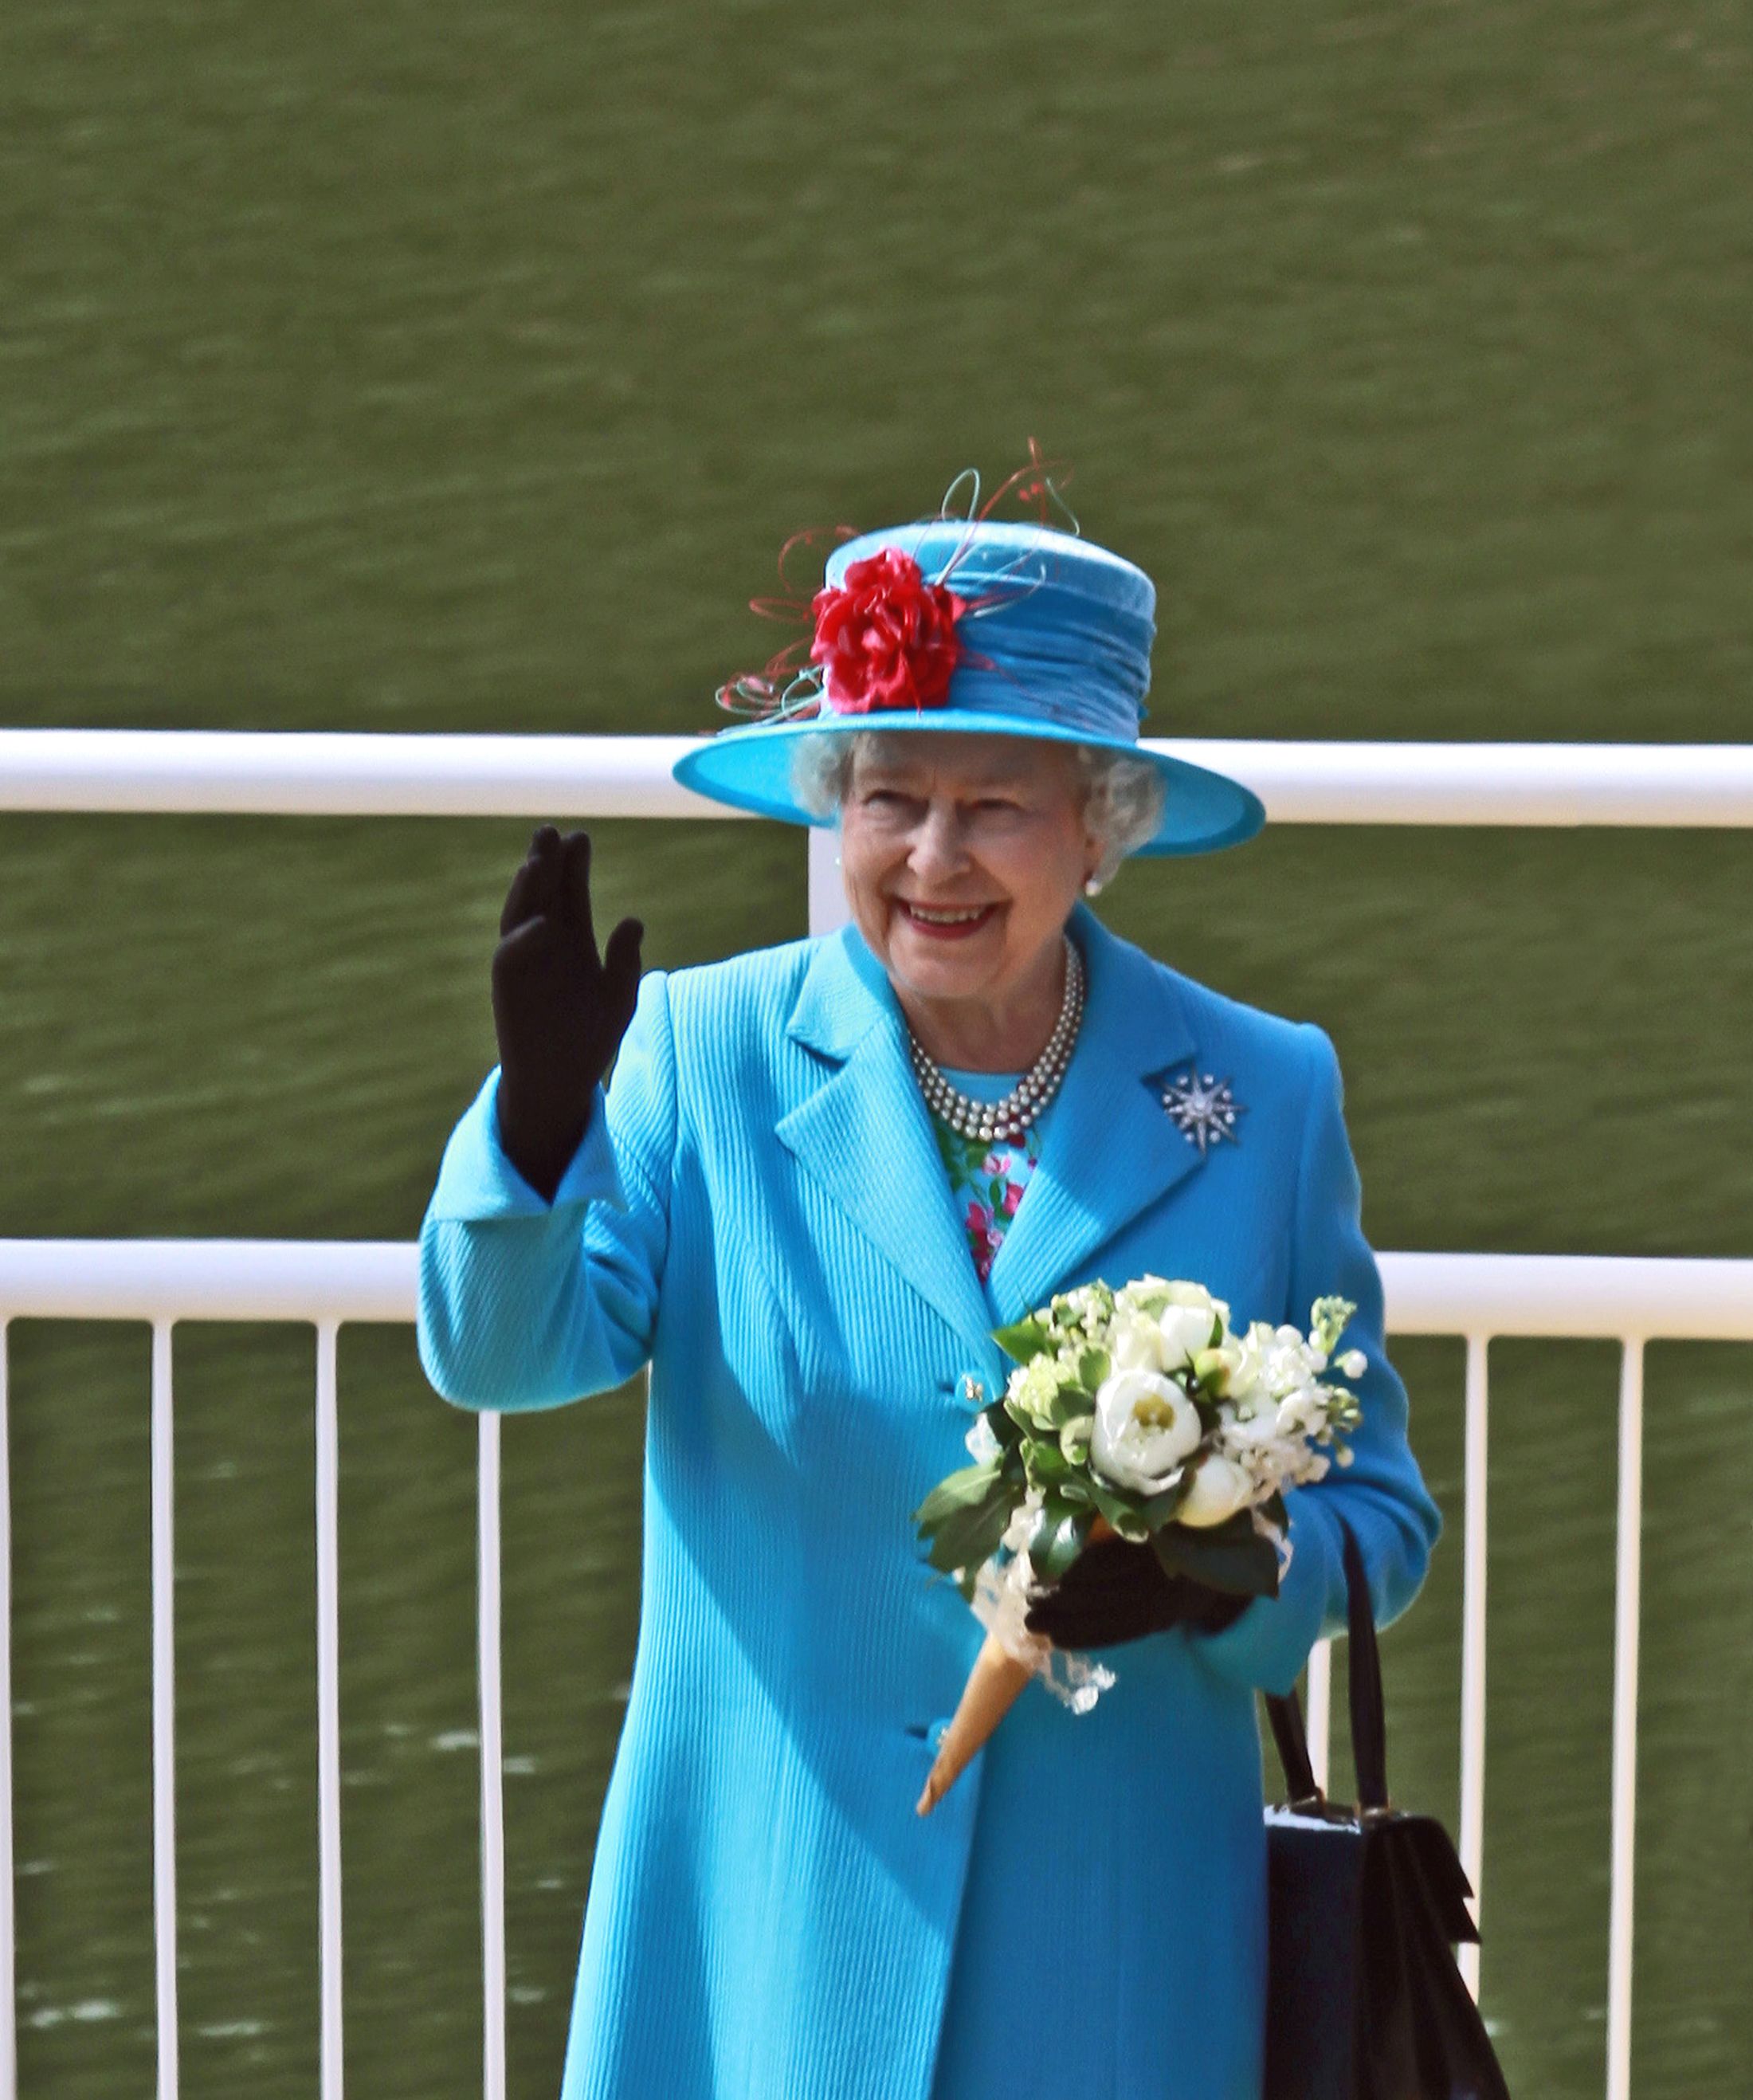 La reina Isabel II rechaza el premio 'Mayor del año': "Eres tan mayor como te sientes"